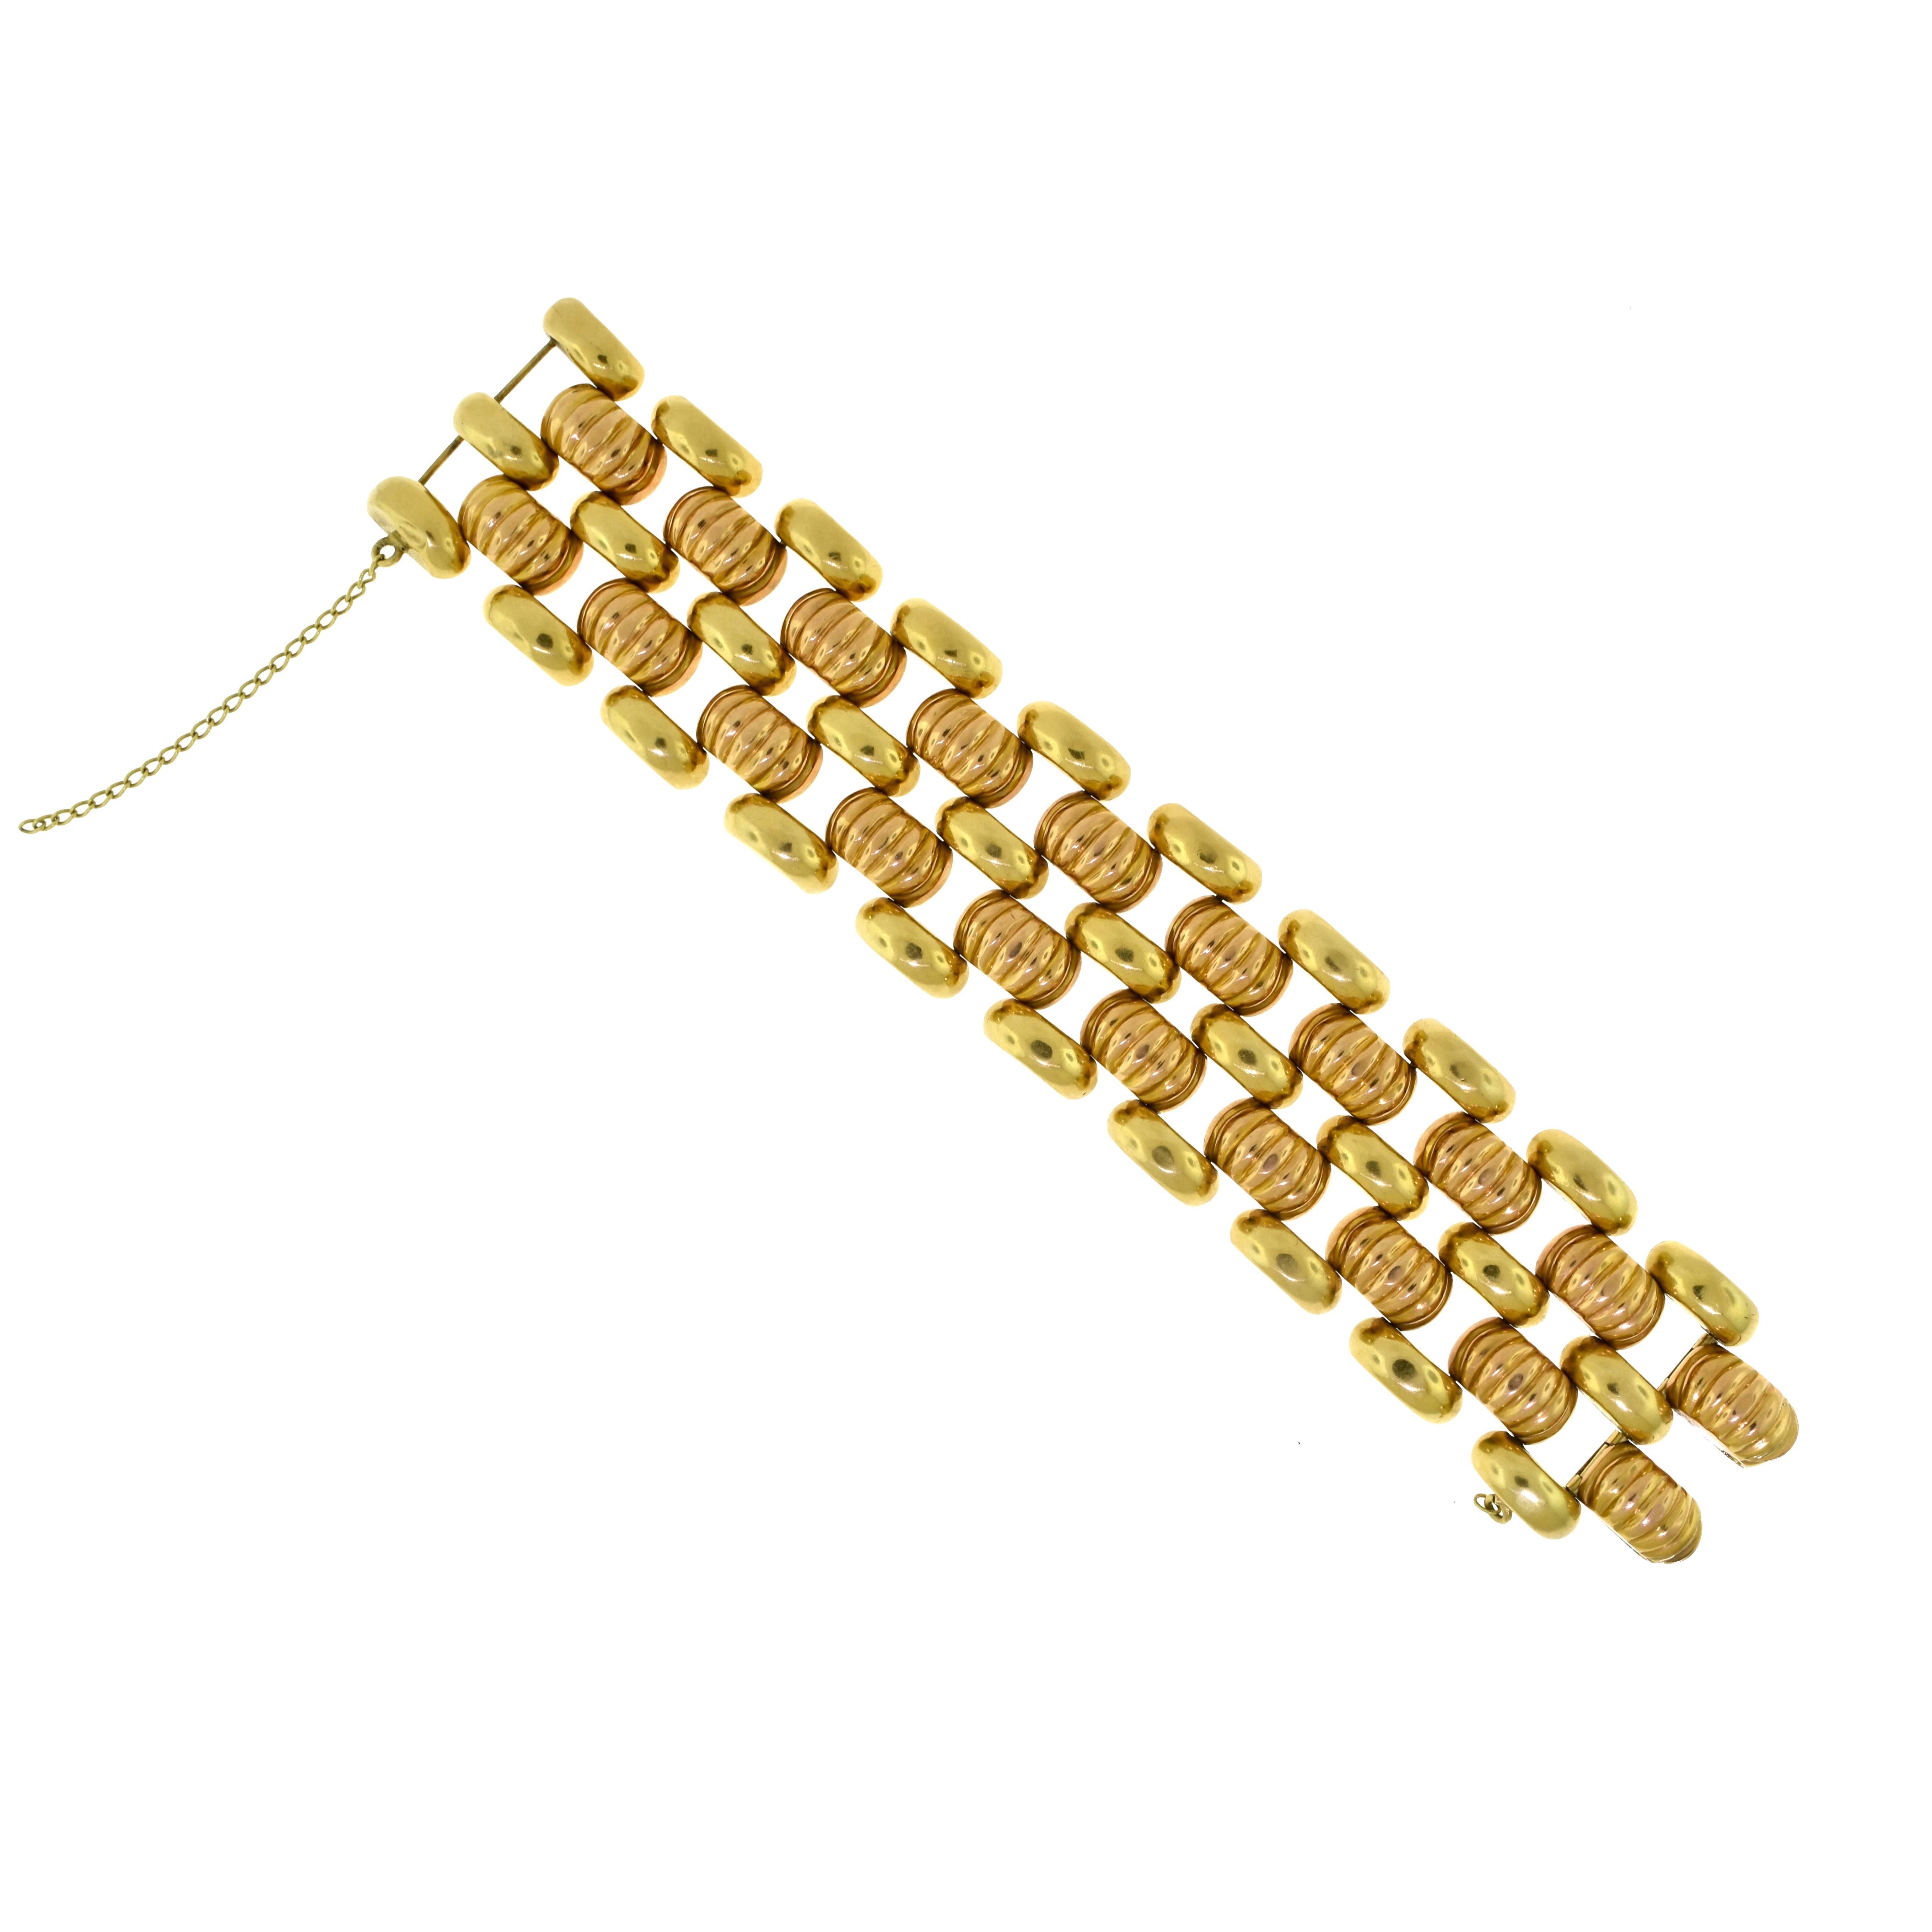 Metal: 18 Karat Rose Gold, 18 Karat Yellow Gold 
Bracelet Length: 7.75 inches
Bracelet Width: 1.5 inches
Bracelet Thickness: 6.72 mm
Total Item Weight (g): 87.9 
